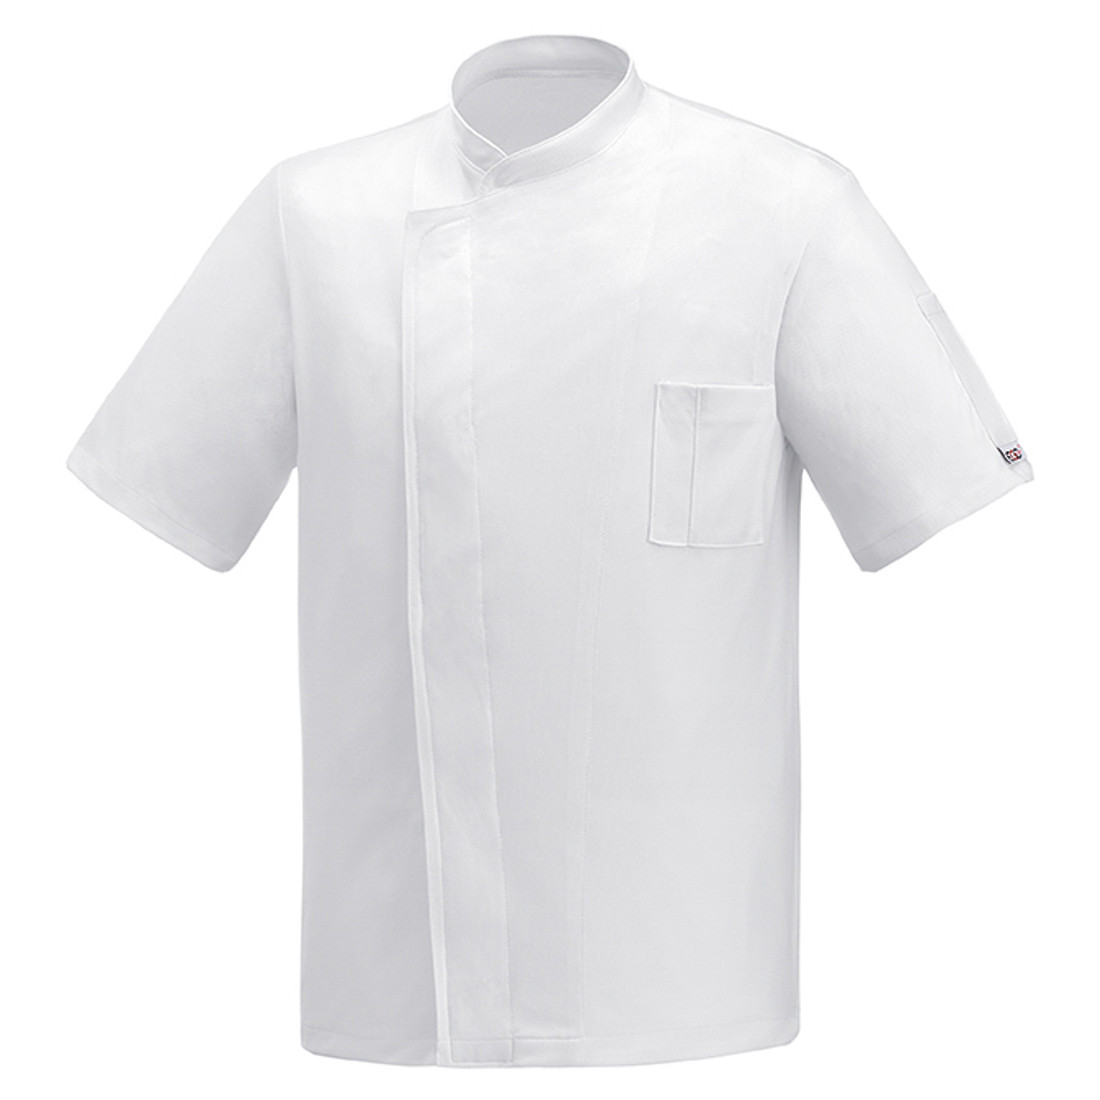 Pizzaiolo Chef's Jacket - Safetywear